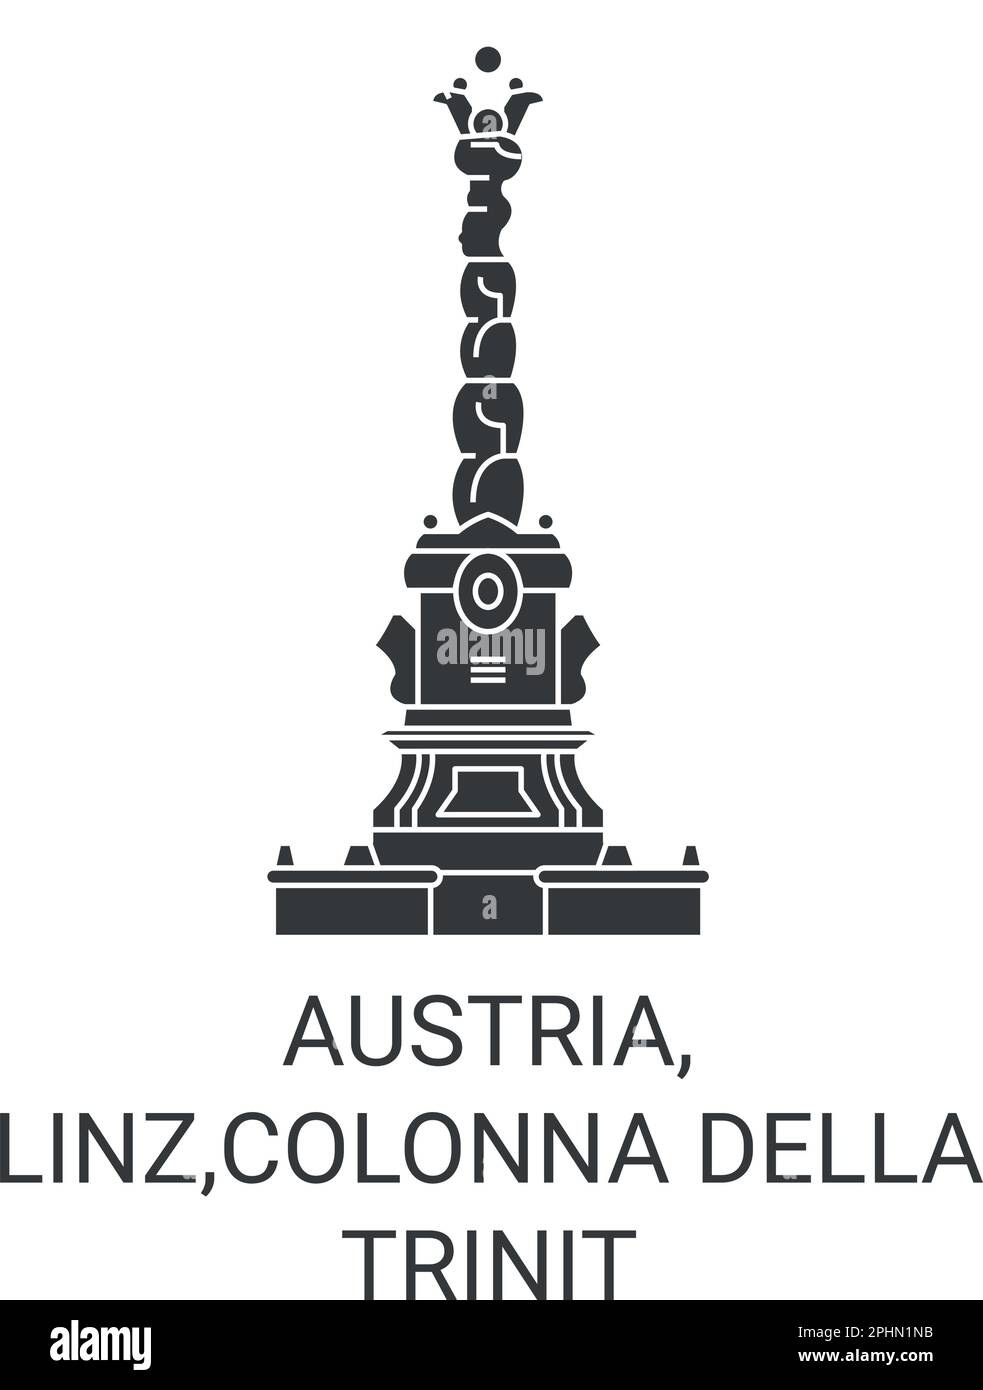 Österreich, Linz, Colonna della Trinit Reise-Wahrzeichen-Vektordarstellung Stock Vektor